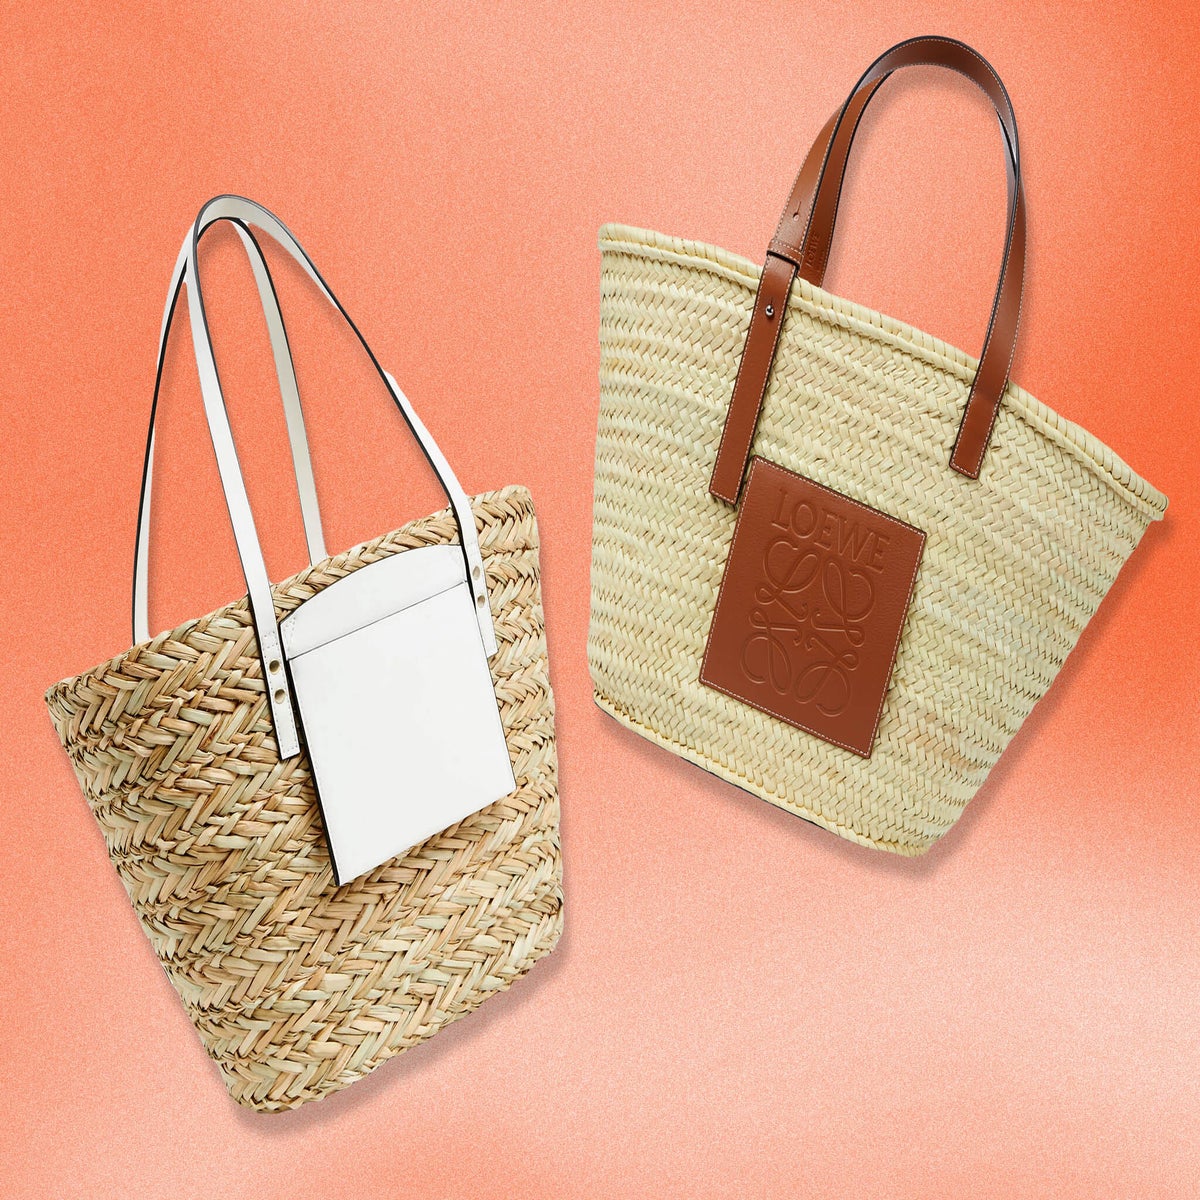 Save Or Splurge: Get A Lookalike Of Loewe's Basket Bag